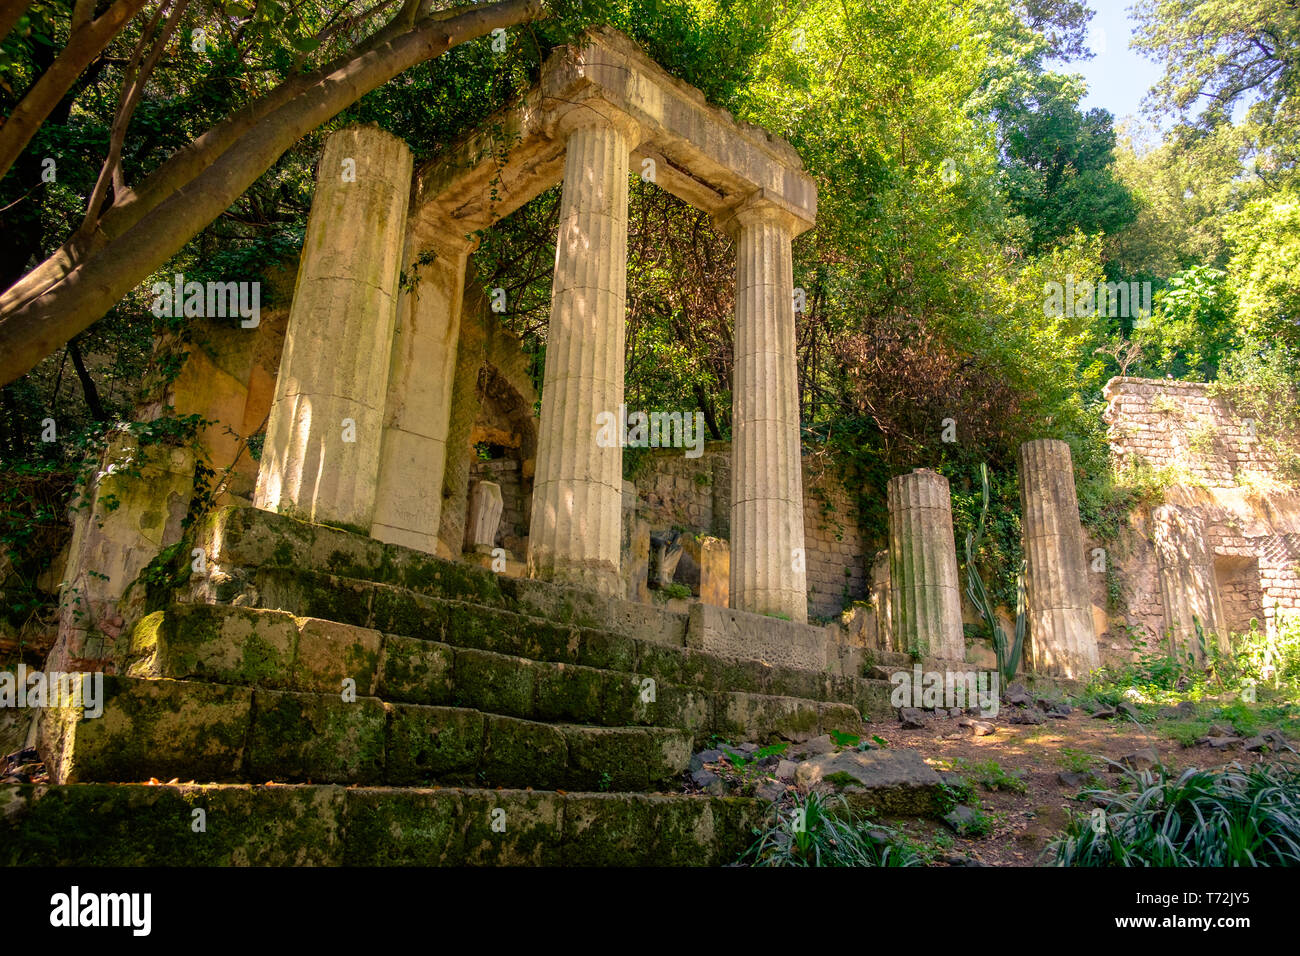 Nel giardino inglese di "Reggia di Caserta', è possibile vedere alcuni falsi ruderi. Questo è un tempio rovina che è apparentemente perso nella giungla. Foto Stock